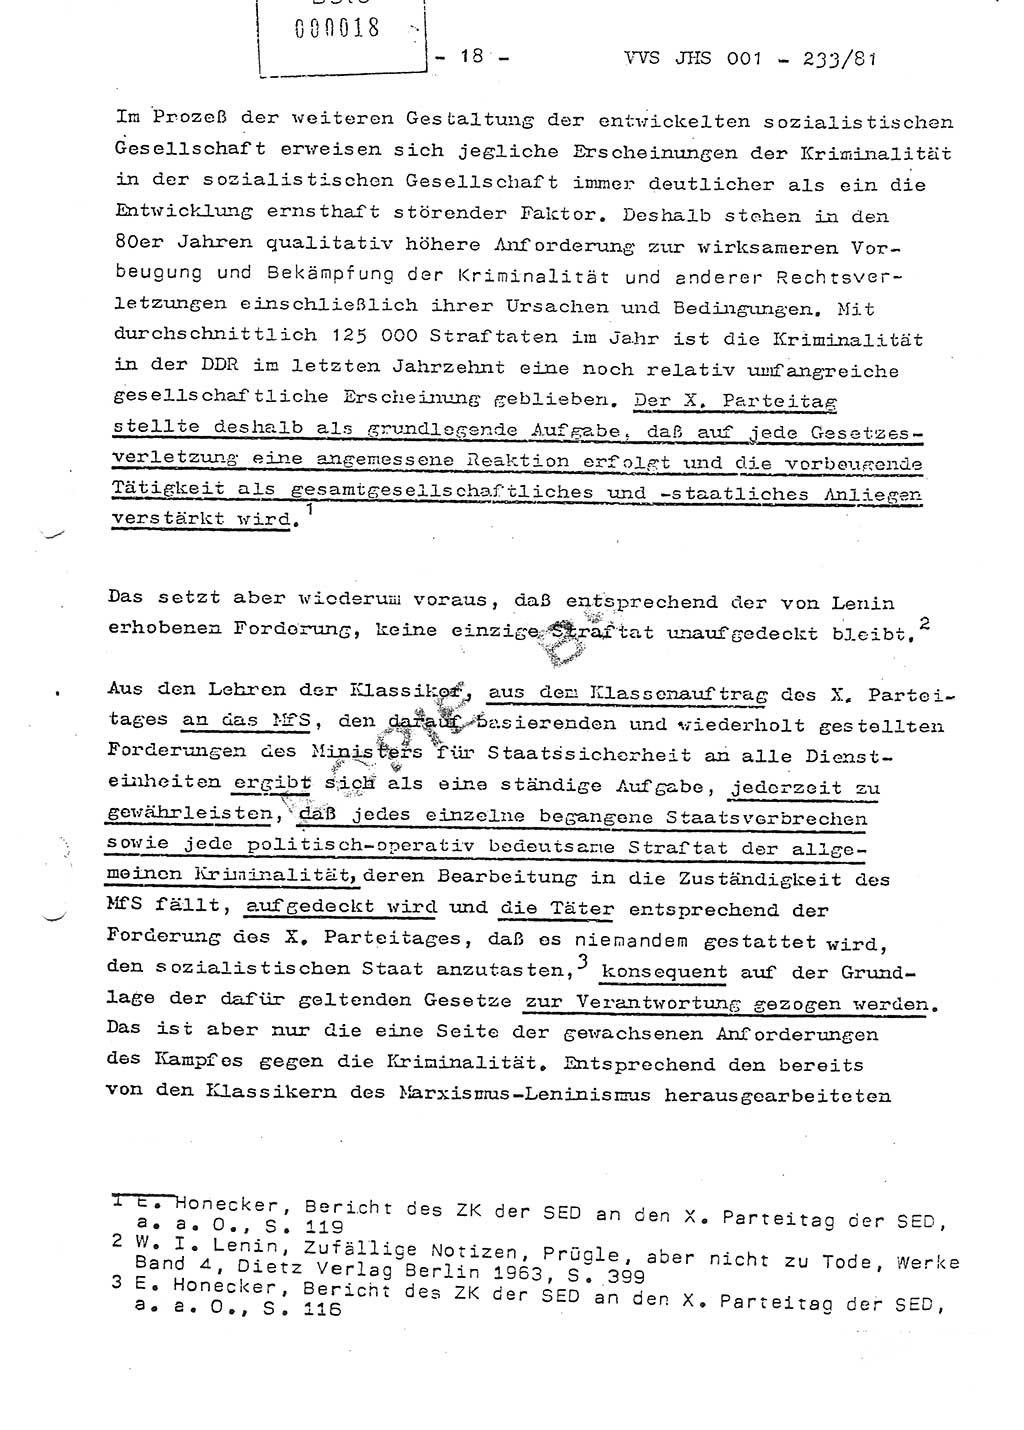 Dissertation Oberstleutnant Horst Zank (JHS), Oberstleutnant Dr. Karl-Heinz Knoblauch (JHS), Oberstleutnant Gustav-Adolf Kowalewski (HA Ⅸ), Oberstleutnant Wolfgang Plötner (HA Ⅸ), Ministerium für Staatssicherheit (MfS) [Deutsche Demokratische Republik (DDR)], Juristische Hochschule (JHS), Vertrauliche Verschlußsache (VVS) o001-233/81, Potsdam 1981, Blatt 18 (Diss. MfS DDR JHS VVS o001-233/81 1981, Bl. 18)